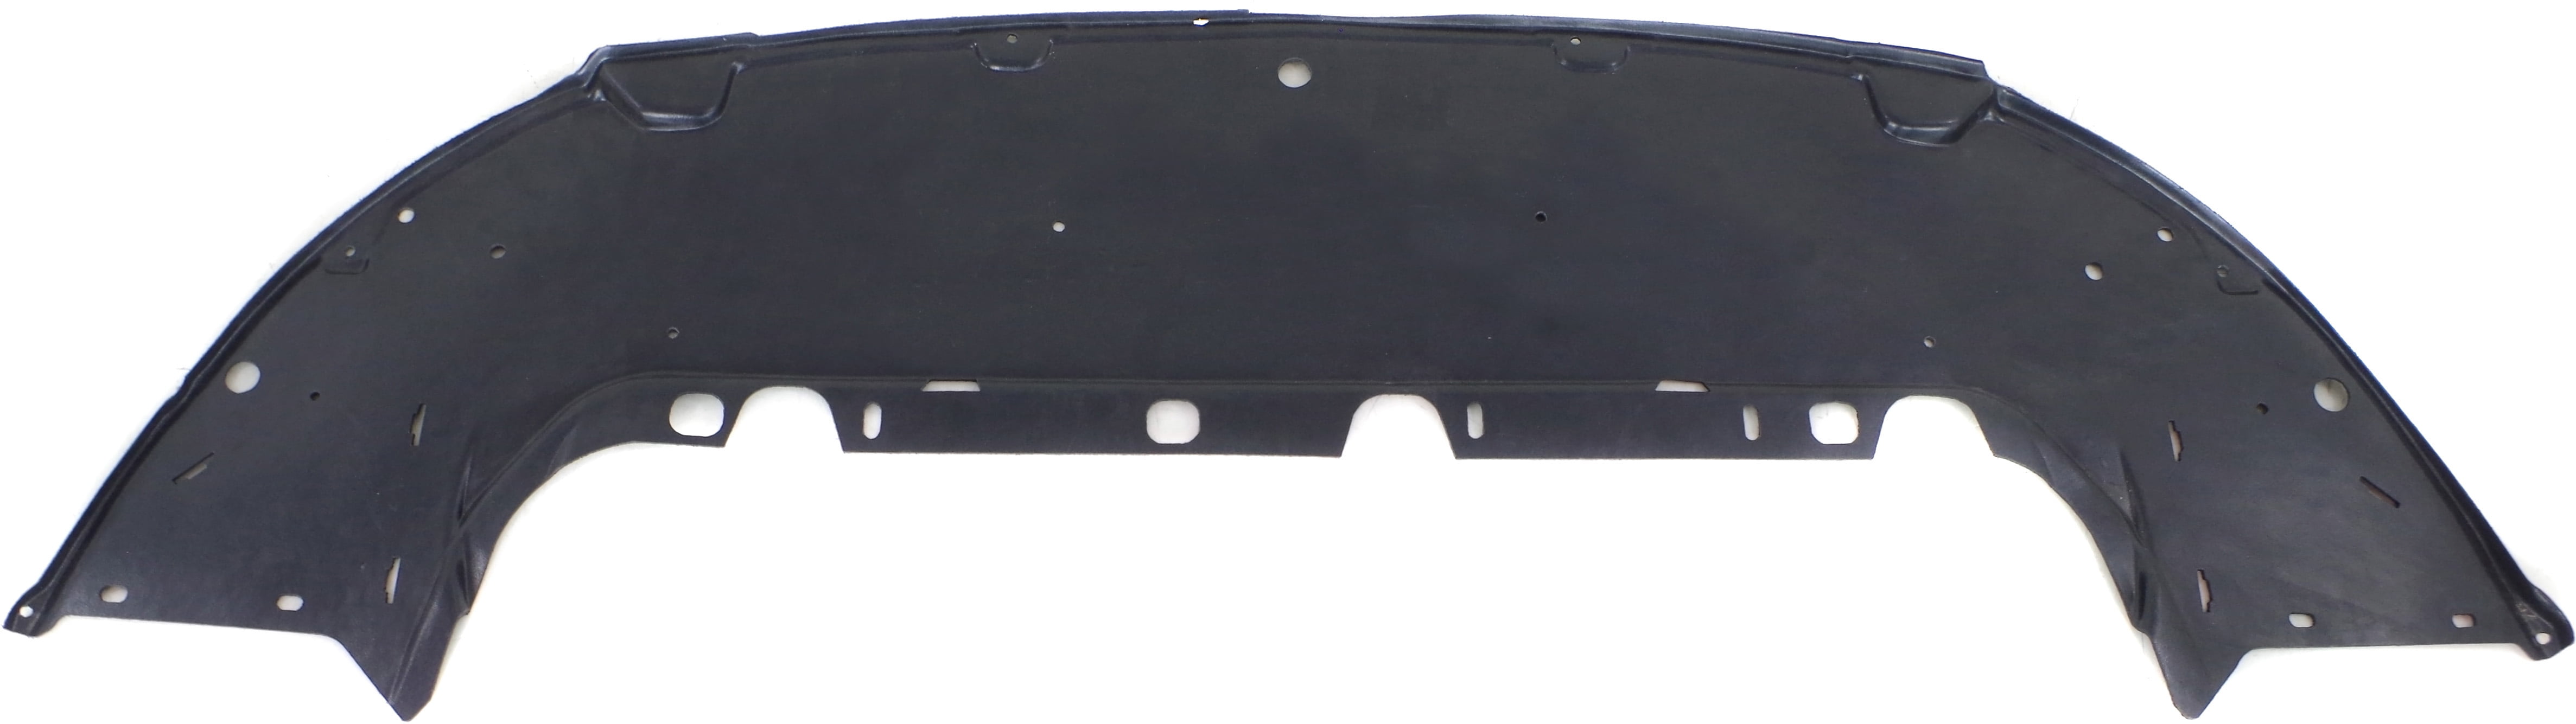 Crash Parts Plus Front Passenger Side Right Splash Shield Fender Liner for 2013-2014 Ford C-Max 